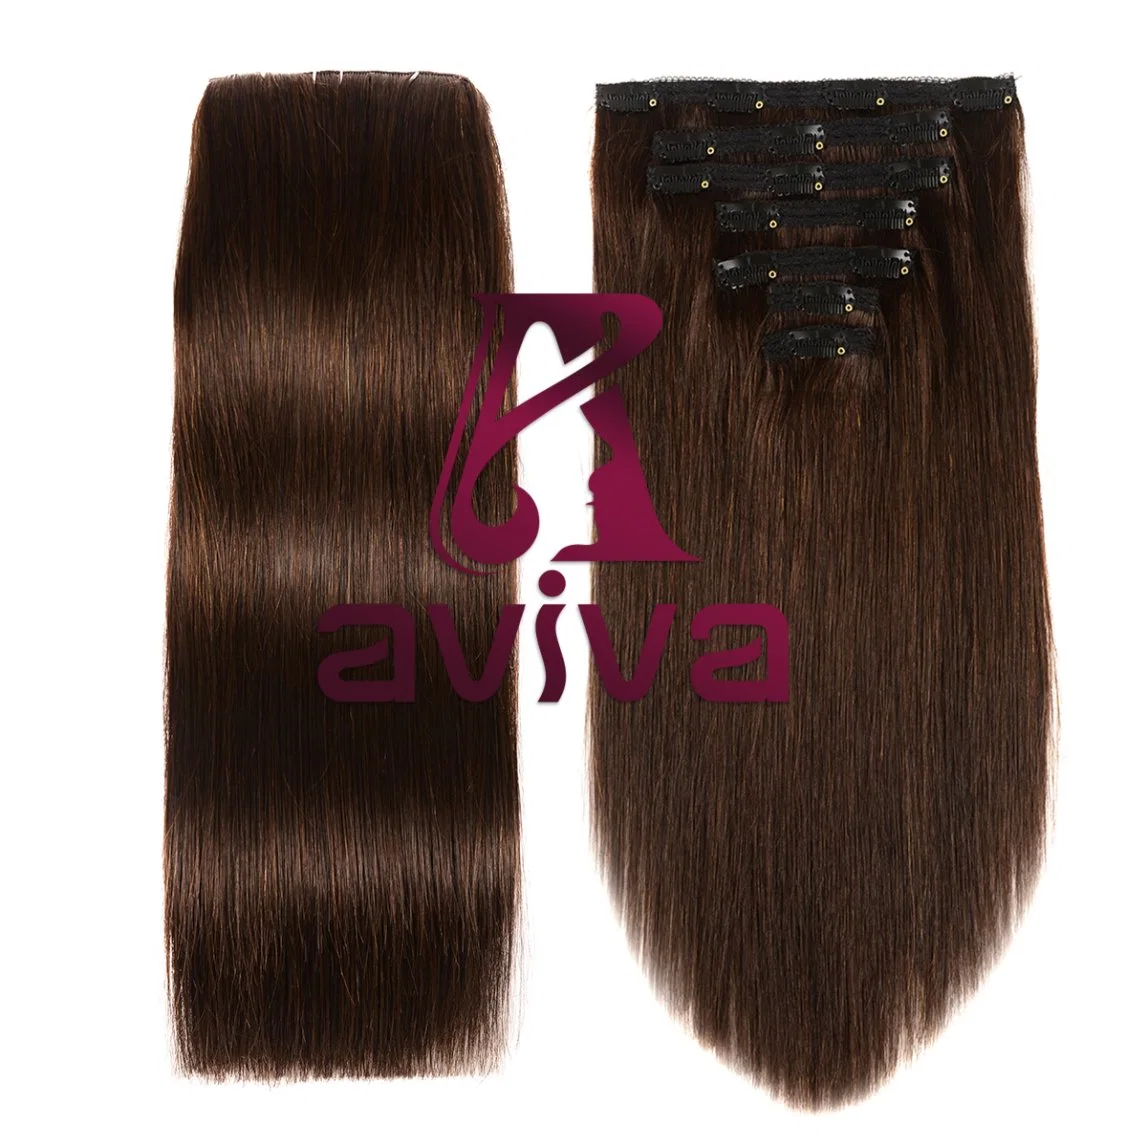 Brasil Hair Extension Clip en el cabello humano de 14 pulgadas de extensión de la Virgen Hair Extension Clip Hair Extension 2# Color Rubio (AV-CH05-14-2#)